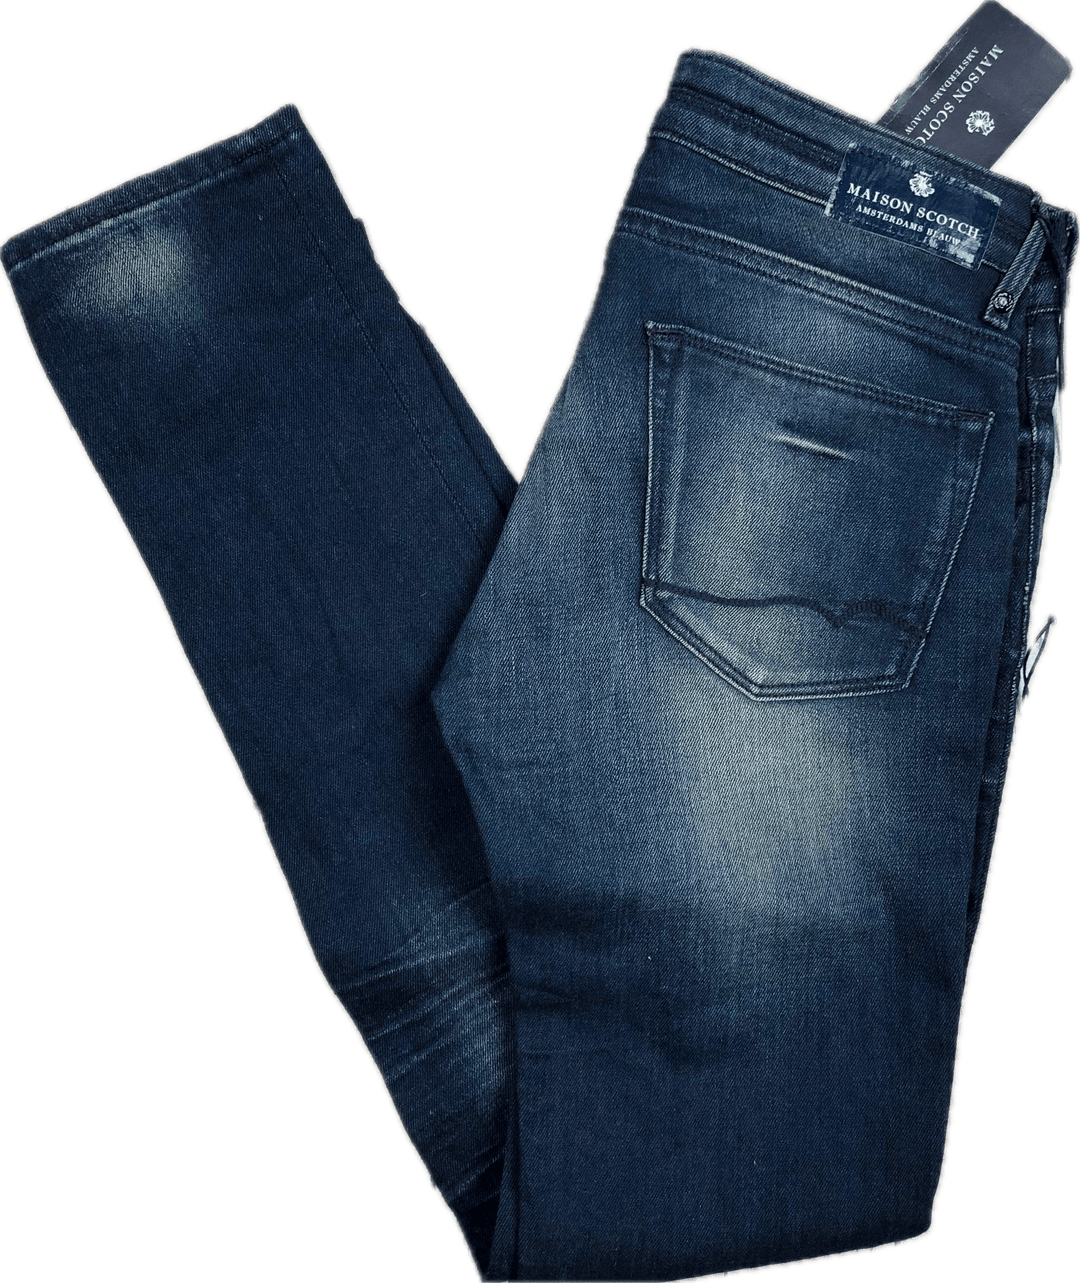 NWT - Maison Scotch 'Kelly XI' Stretch Jeans- Size 27/32 - Jean Pool